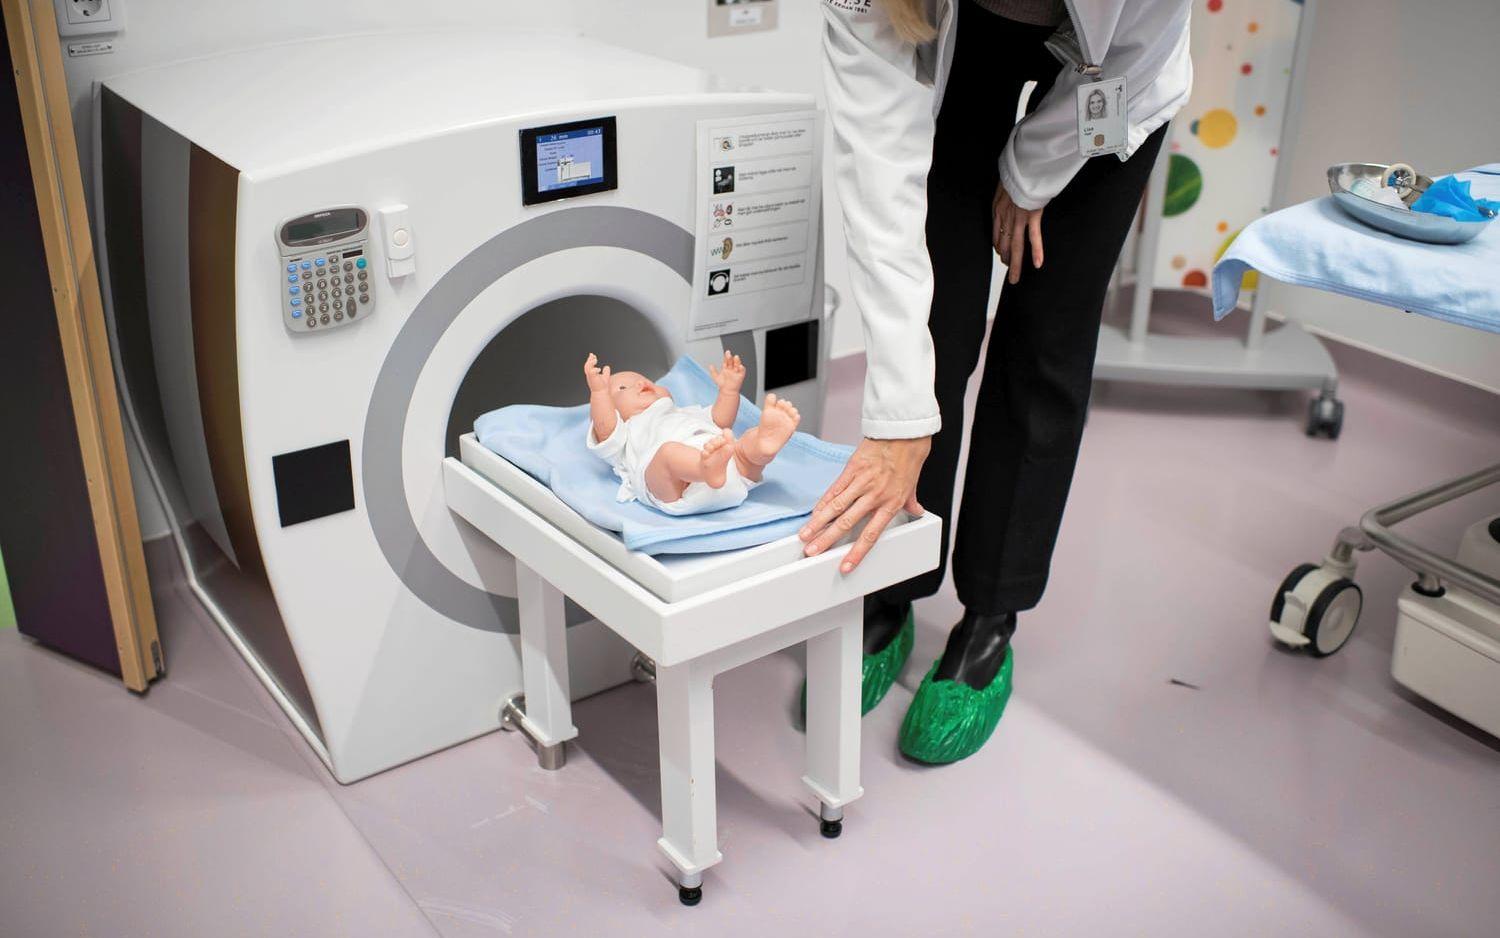 En liten version av en magnetröntgenapparat finns också, så barnen genom lek kan förbereda sig för sina egna undersökningar.